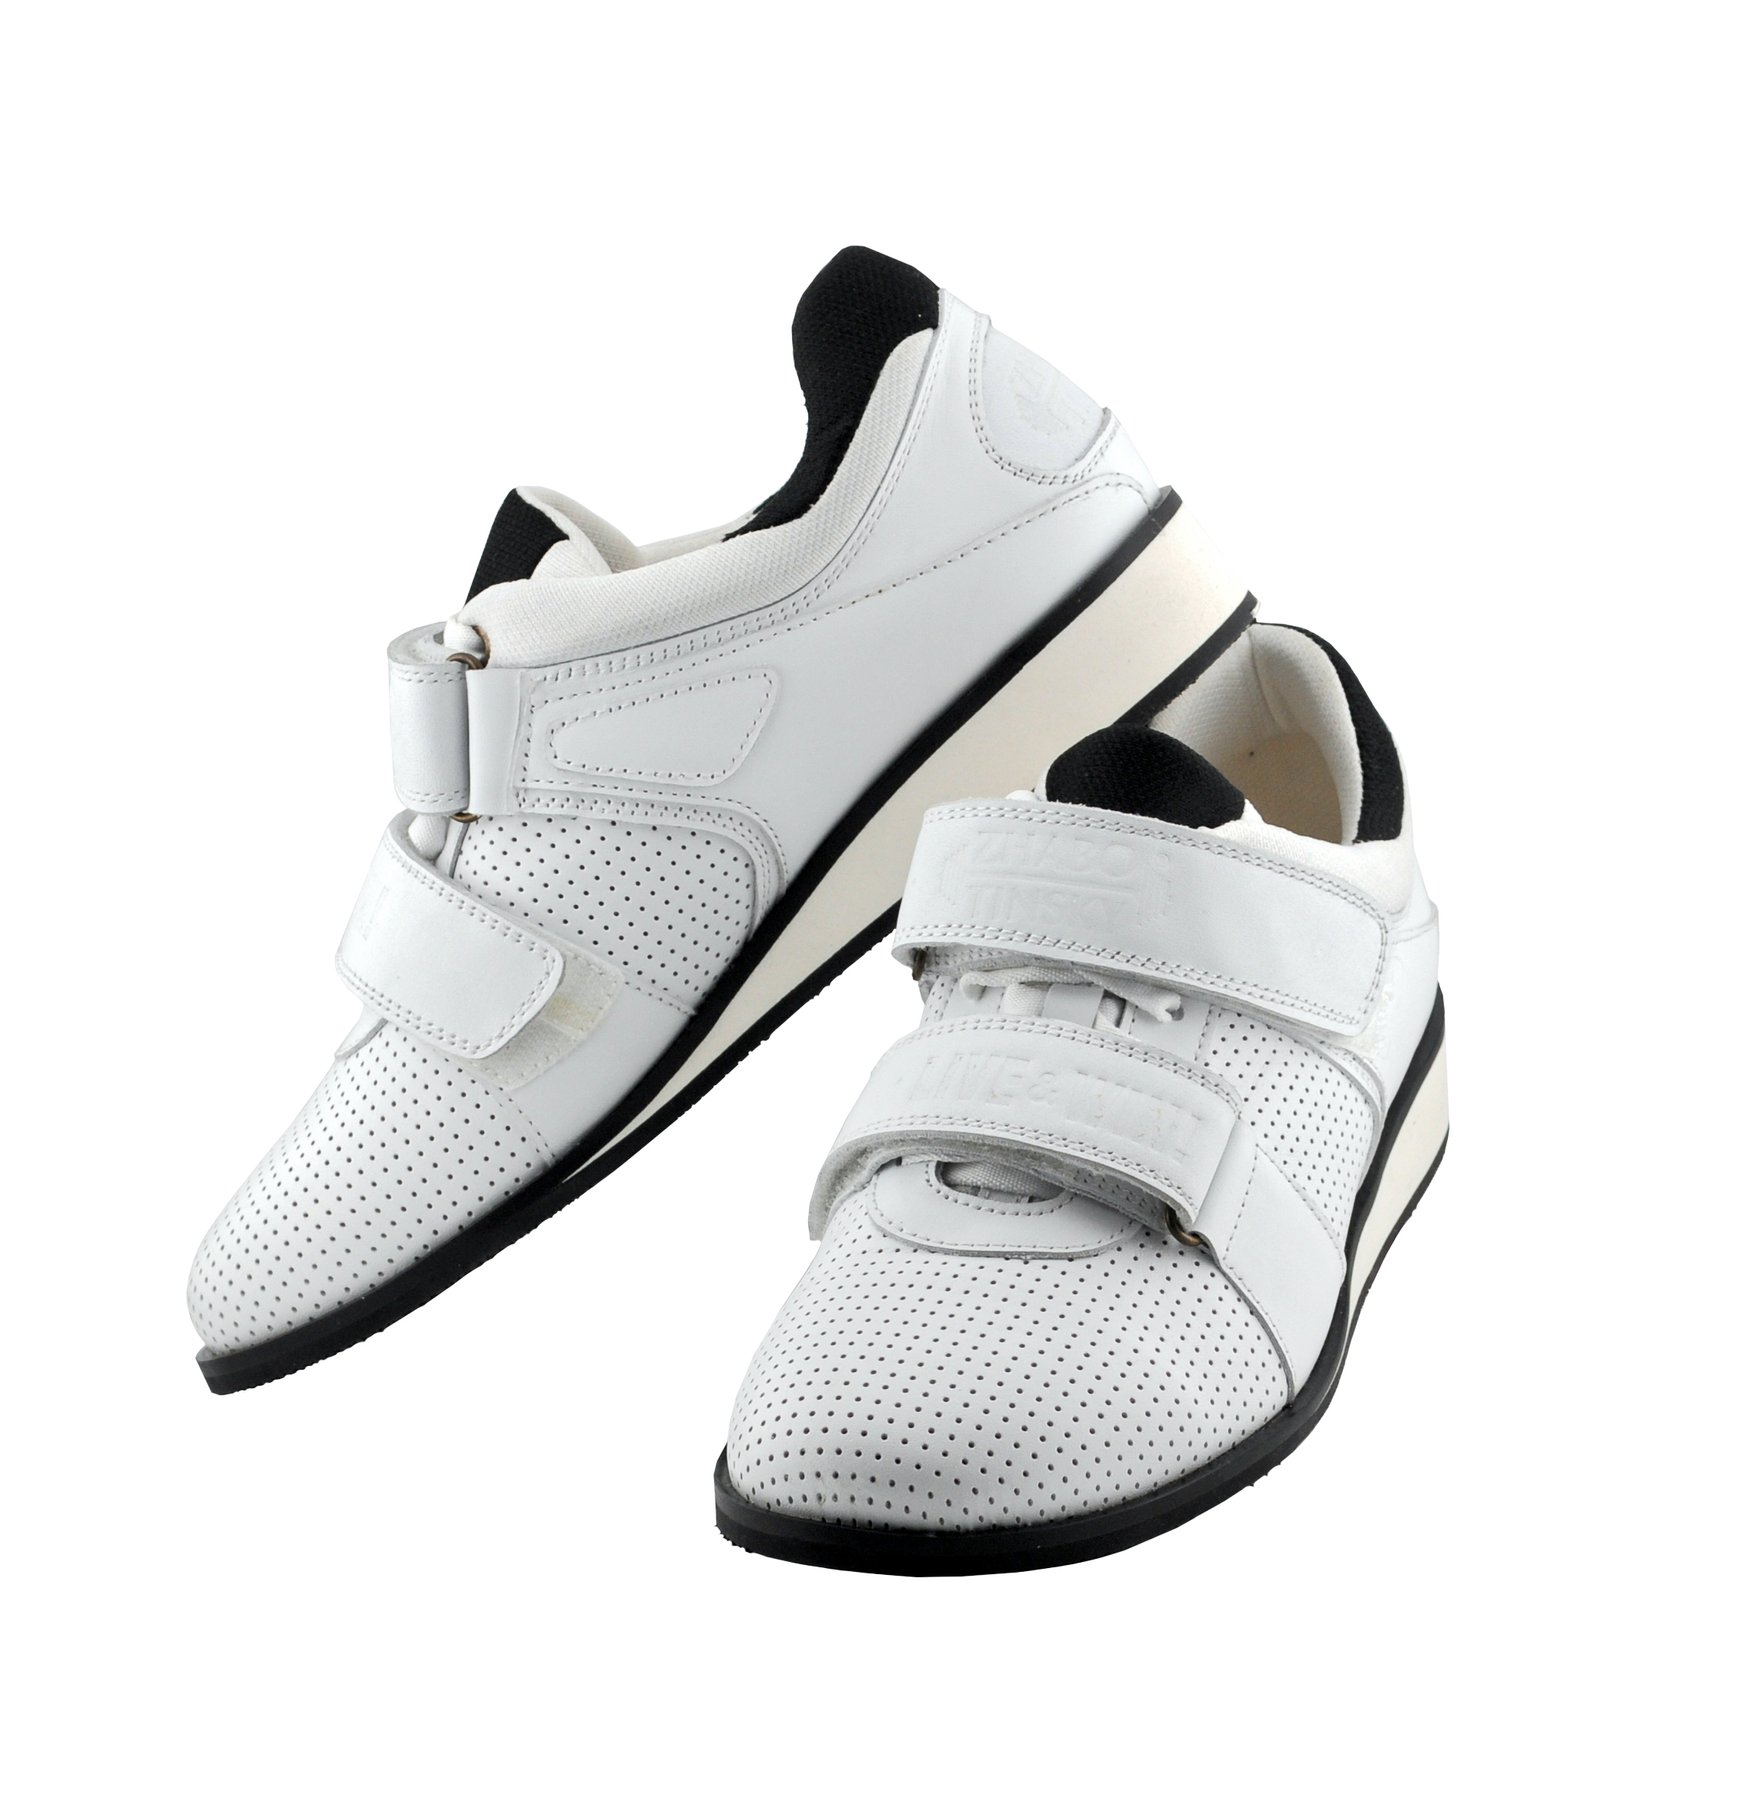 Weightlifting shoes Zhabotinsky Classic, White, size 39 (UKR)